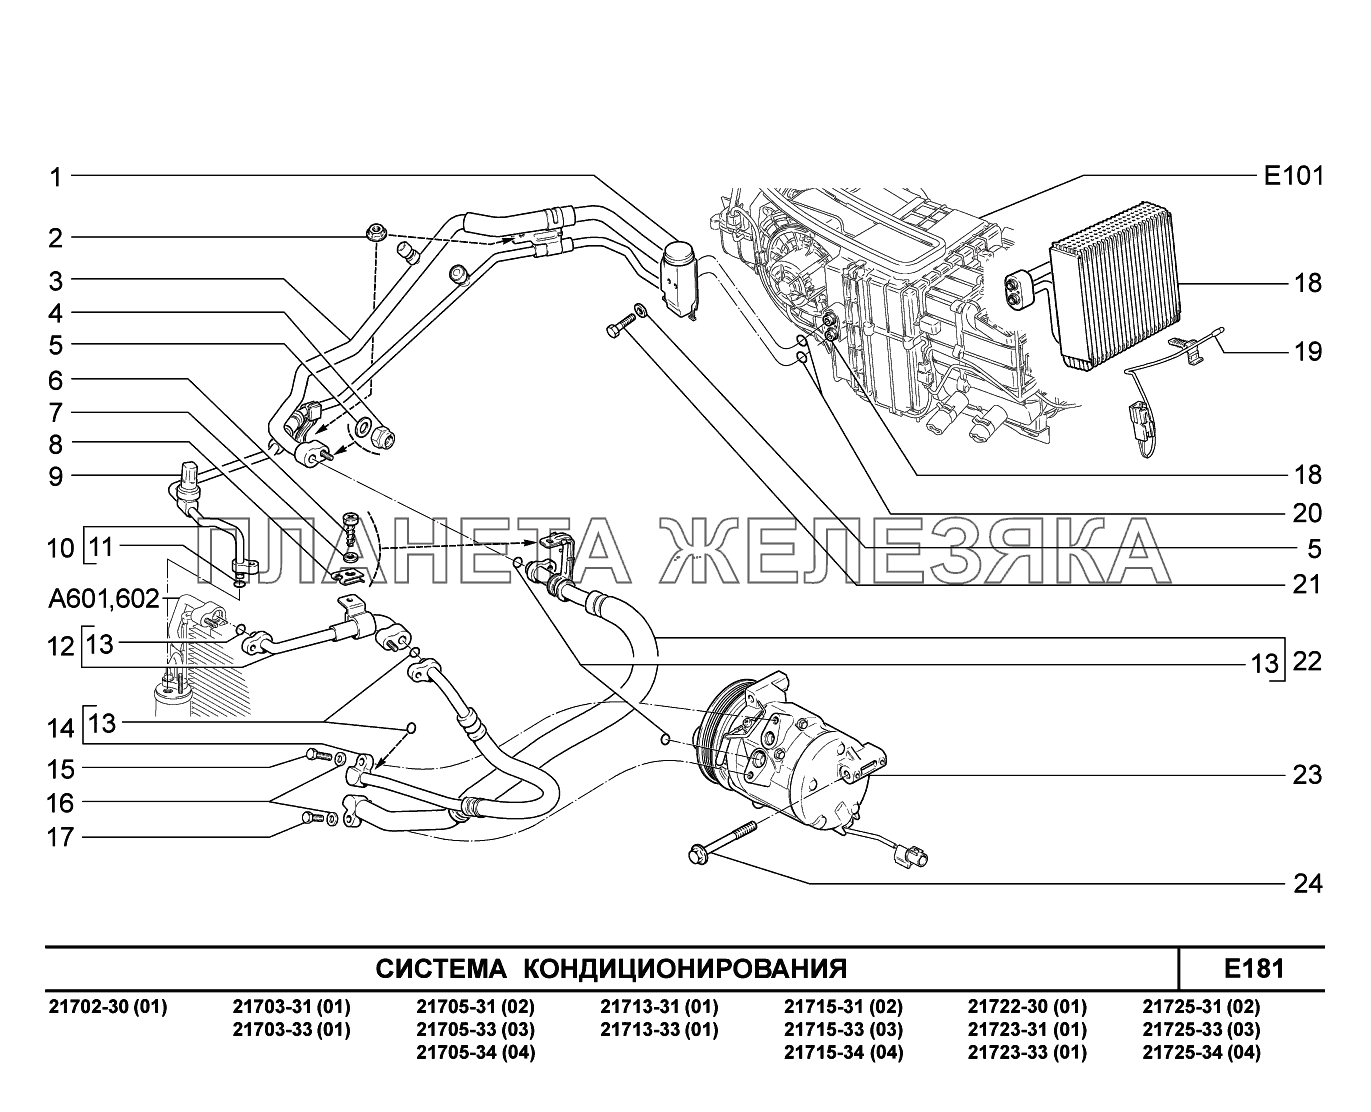 E181. Система кондиционирования ВАЗ-2170 